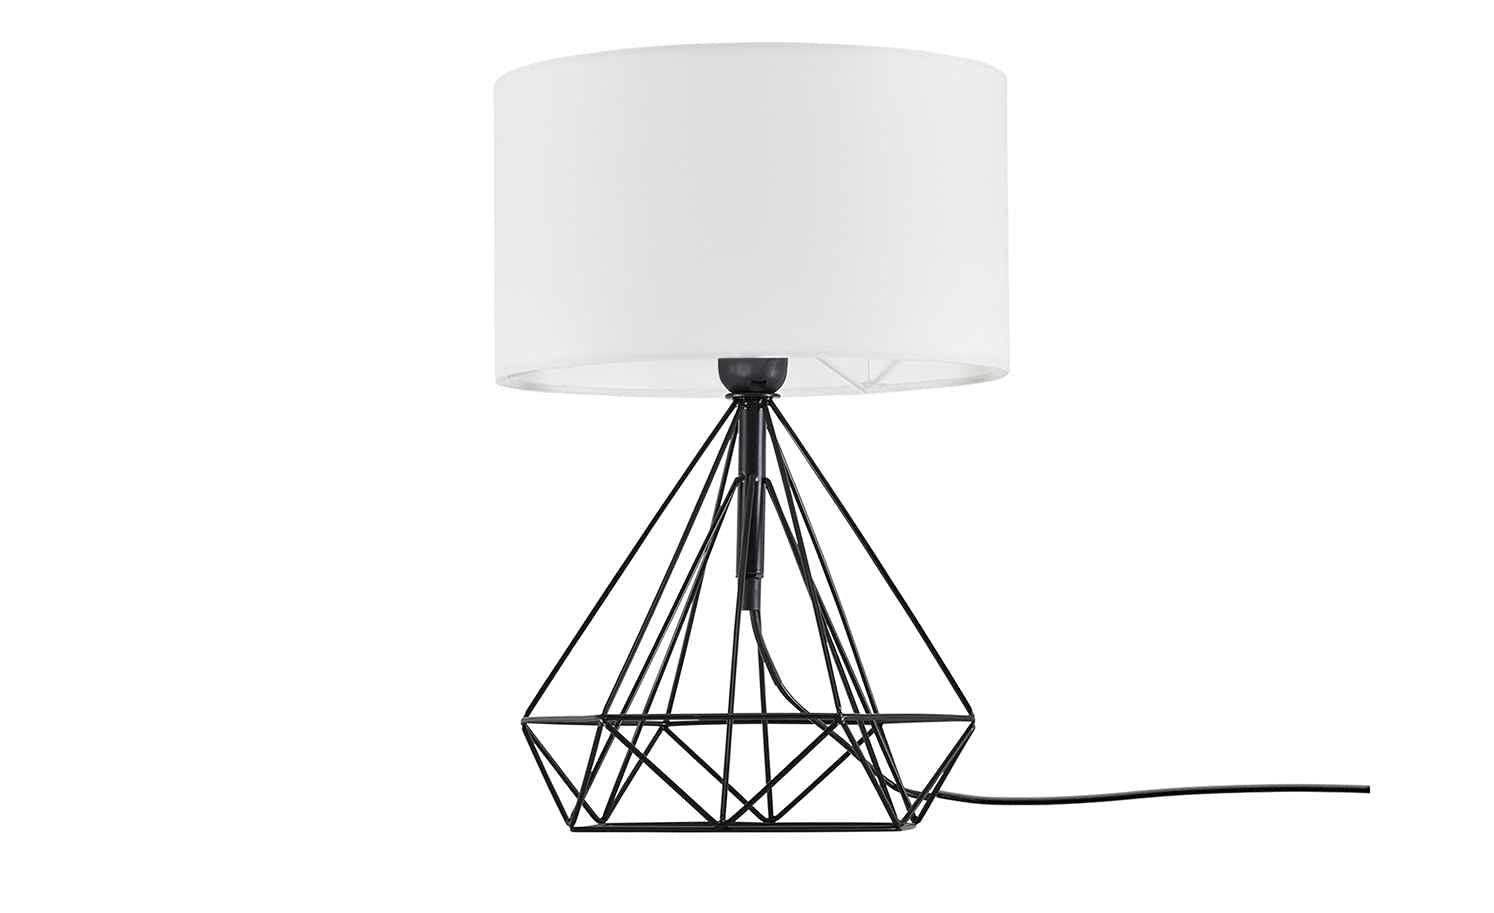 KHG | Tischlampe in schwarz/weiß | | Leuchtmittelfassung: E27 | Maße: 28,0cm Ø Schirm | Tischleuchte 1-flammig |Lampenfuß in schwarz aus Metall - Stoffschirm in weiß